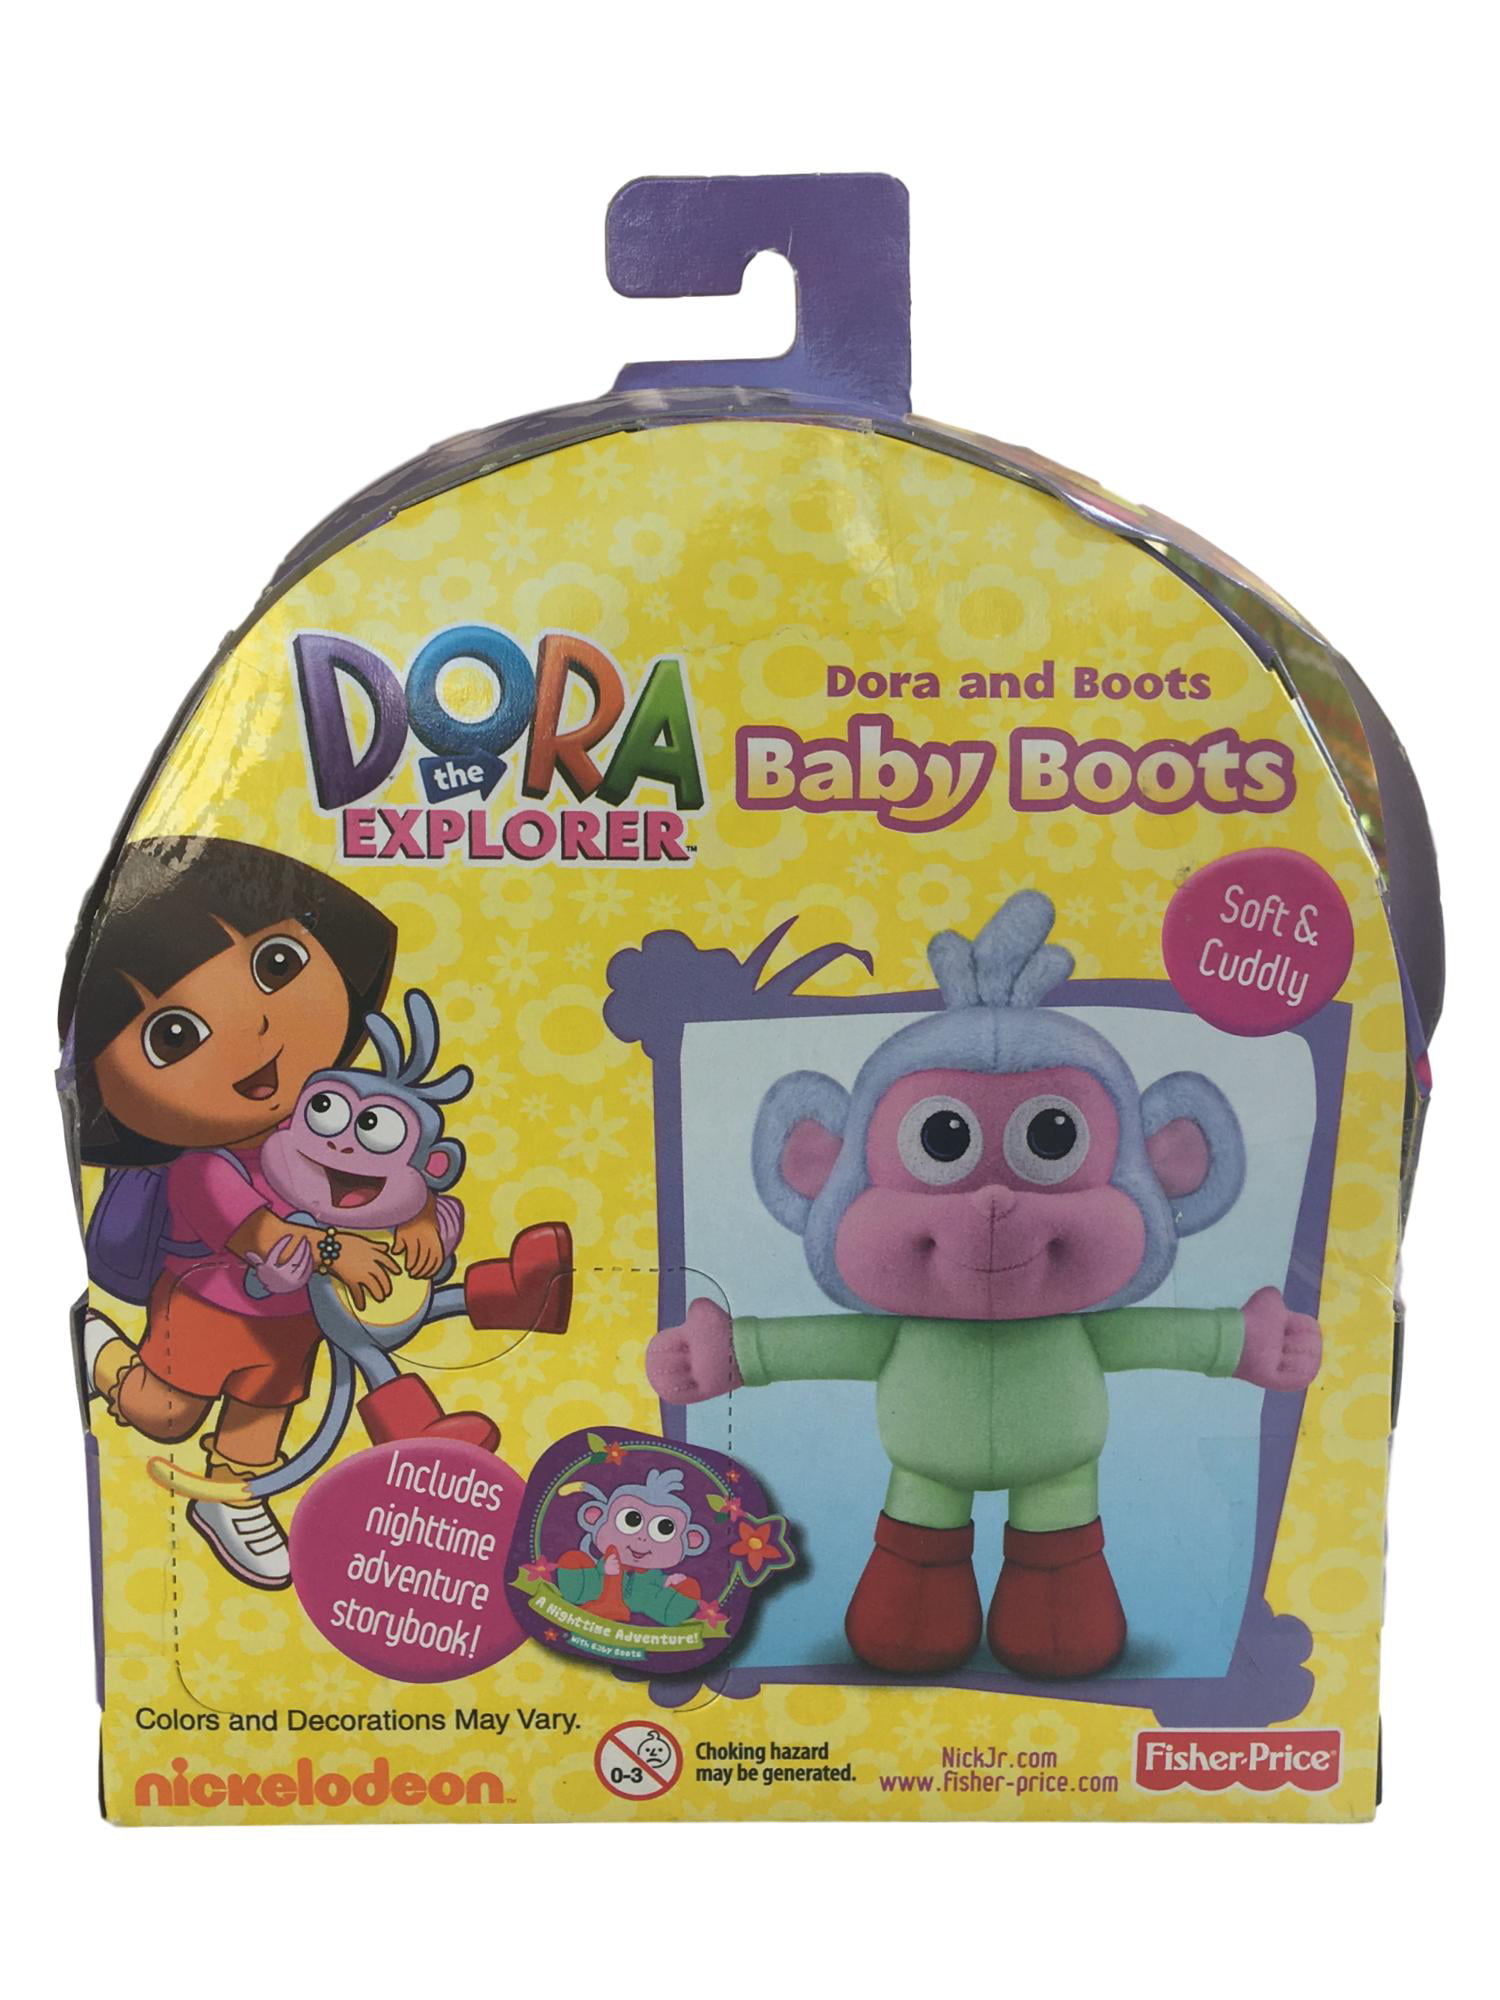 Dora the Explorer Talking Boots Plush Fisher Price 2001